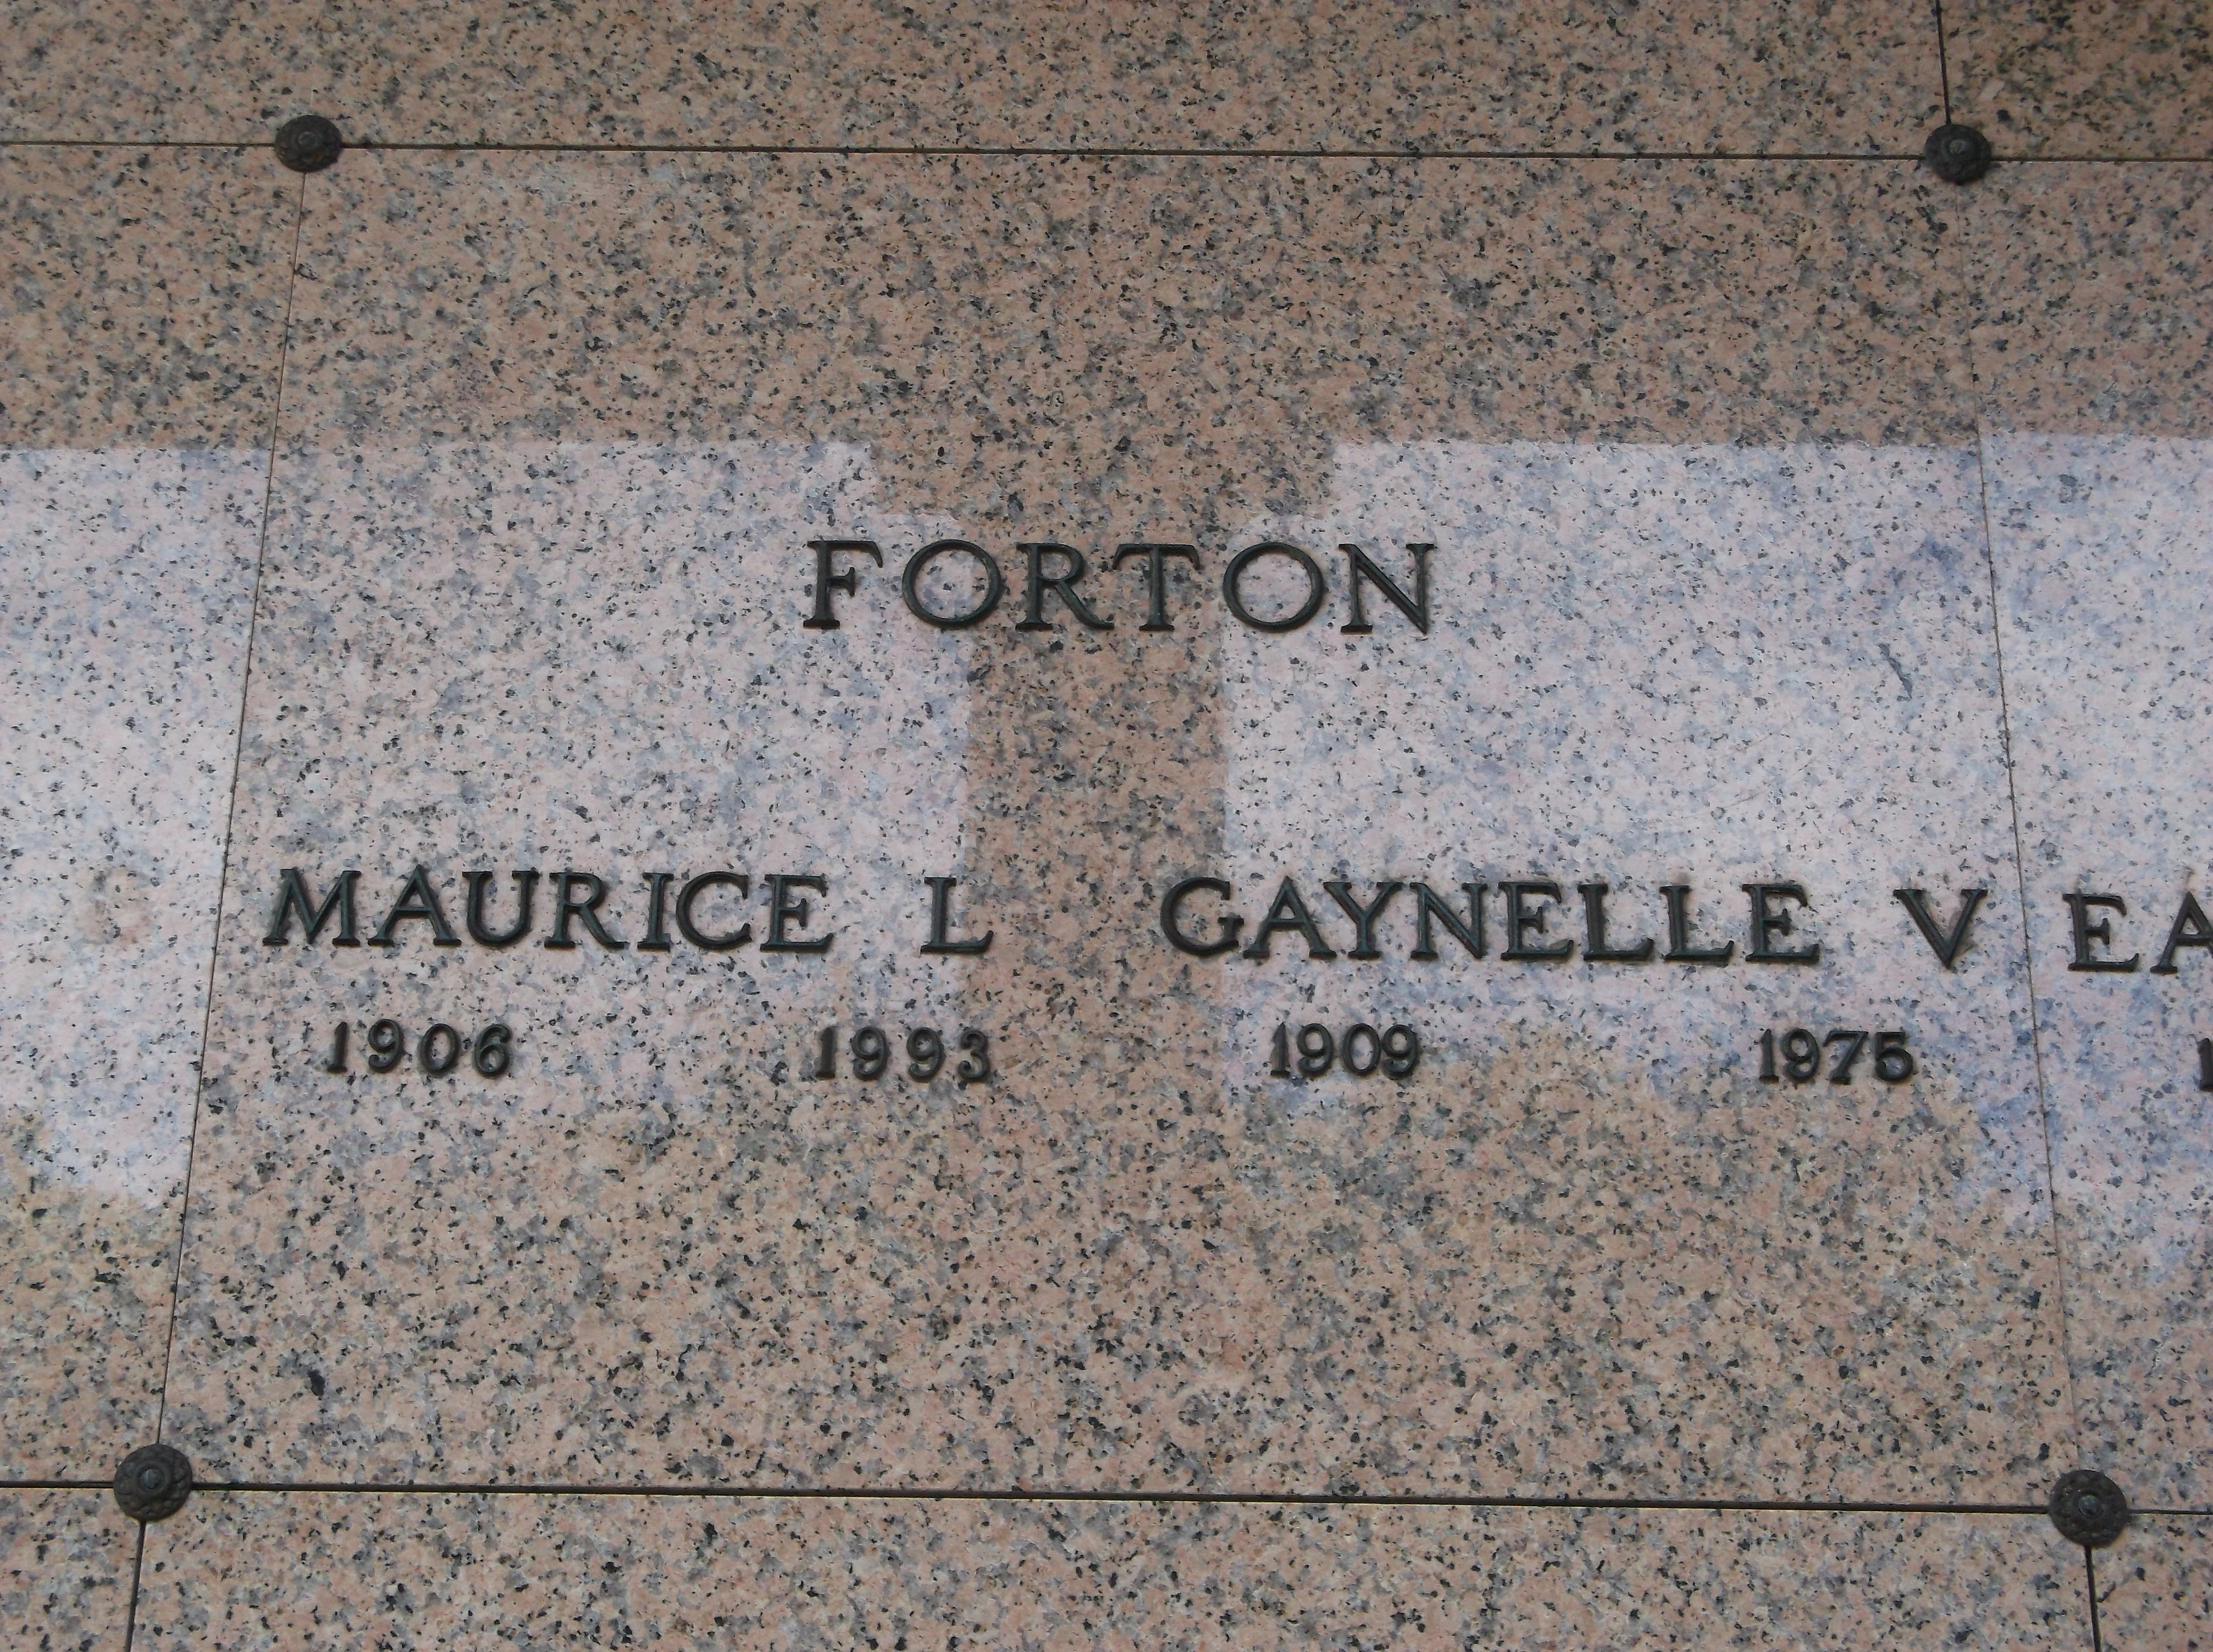 Gaynelle V Forton